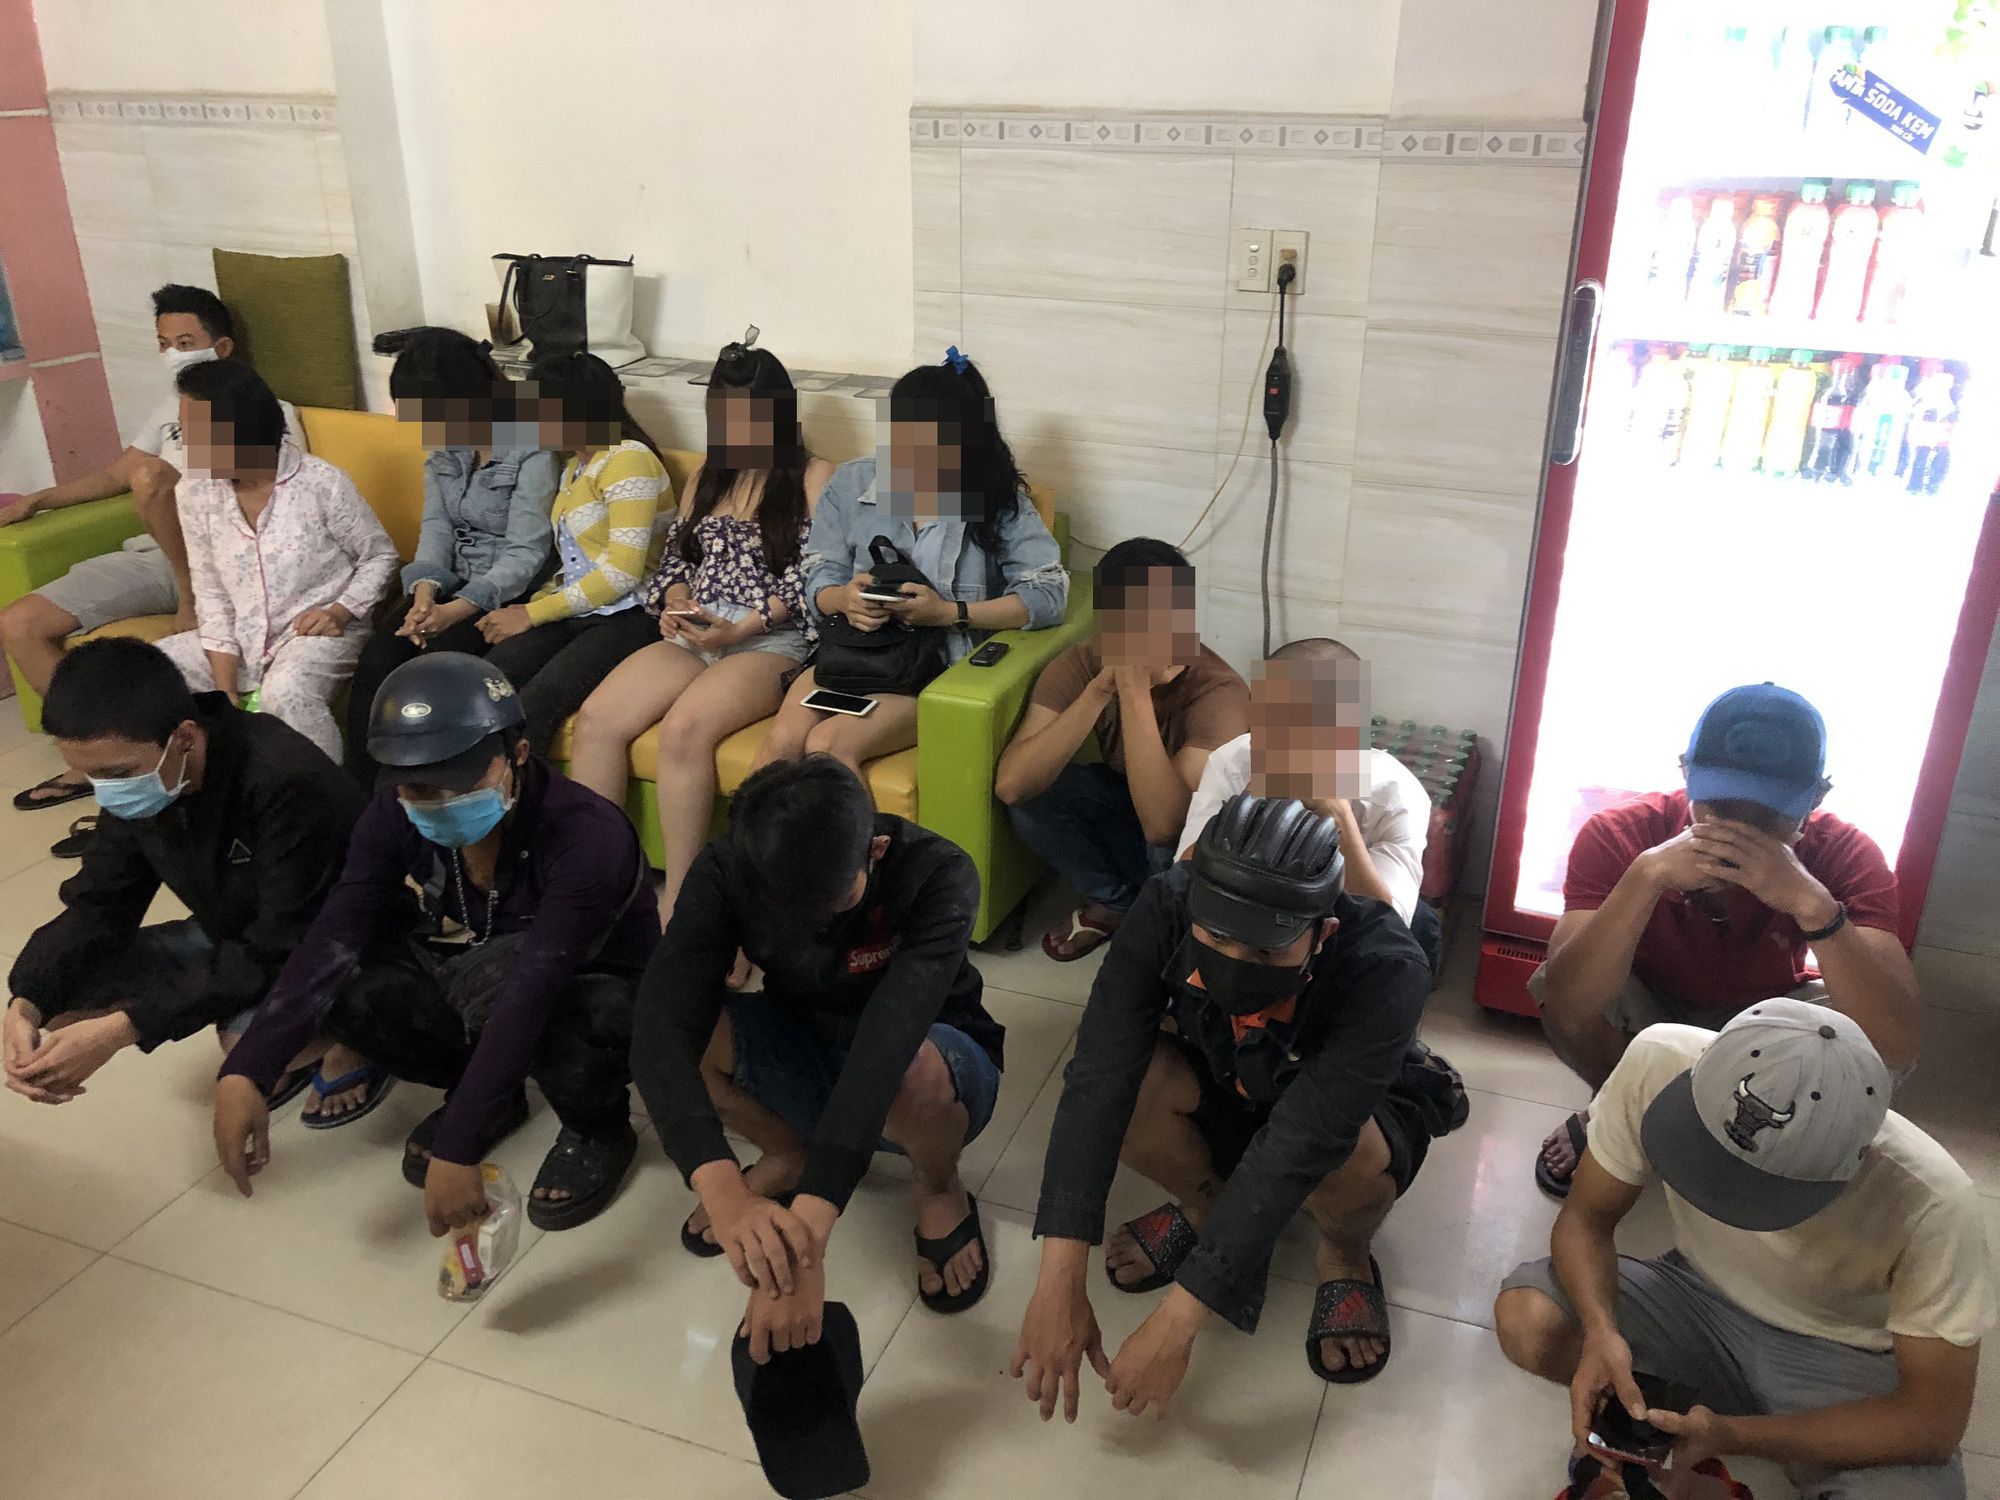 Phát hiện nhóm dân chơi thác loạn ma tuý trong khách sạn ở Sài Gòn - Ảnh 1.